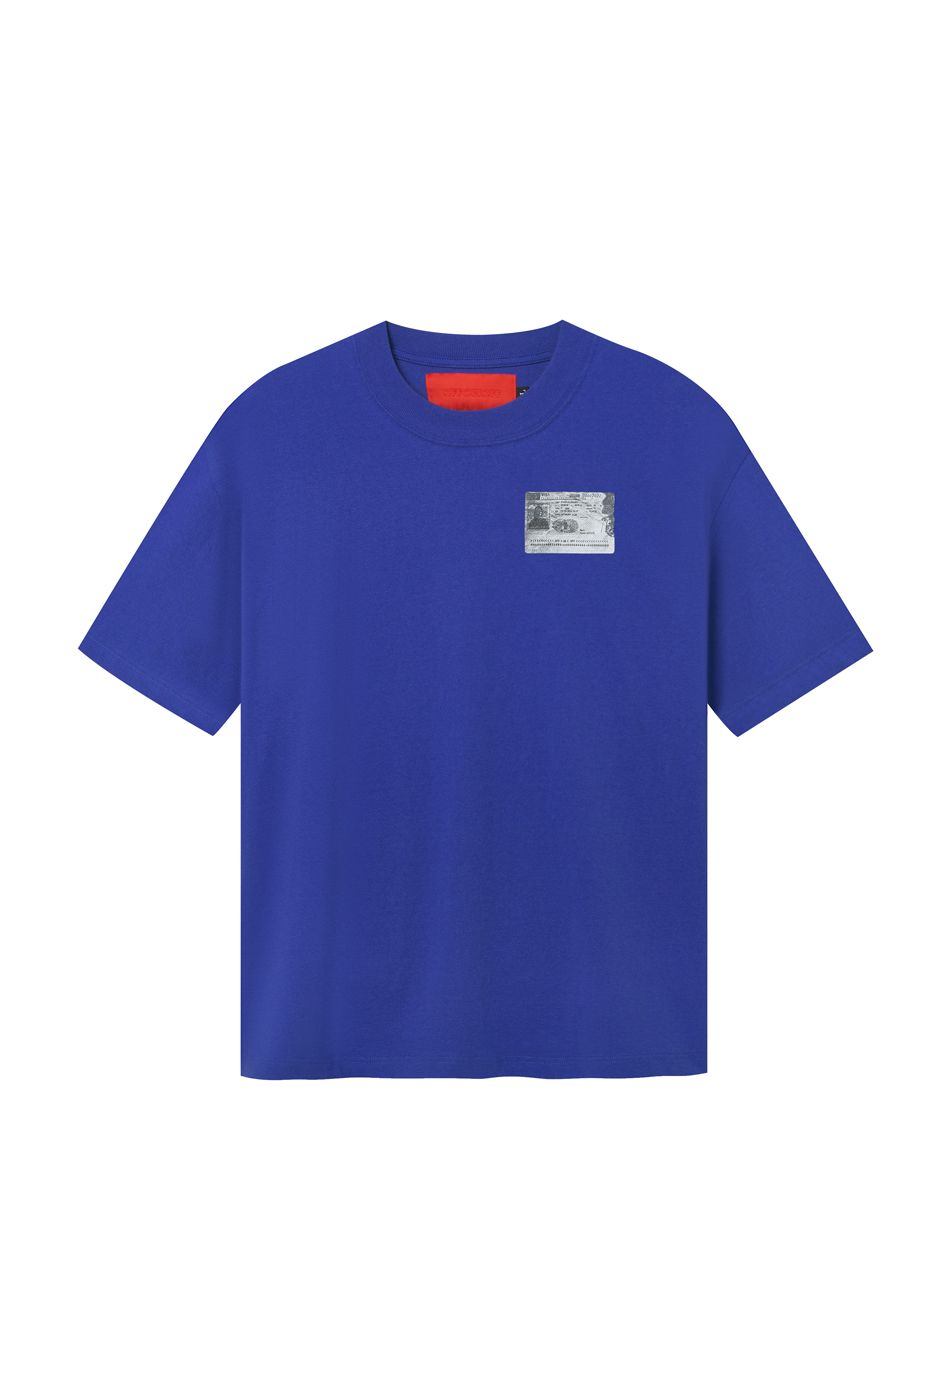 BALENCIAGA tshirt for women  Blue  Balenciaga tshirt 612965TLVB3  online on GIGLIOCOM